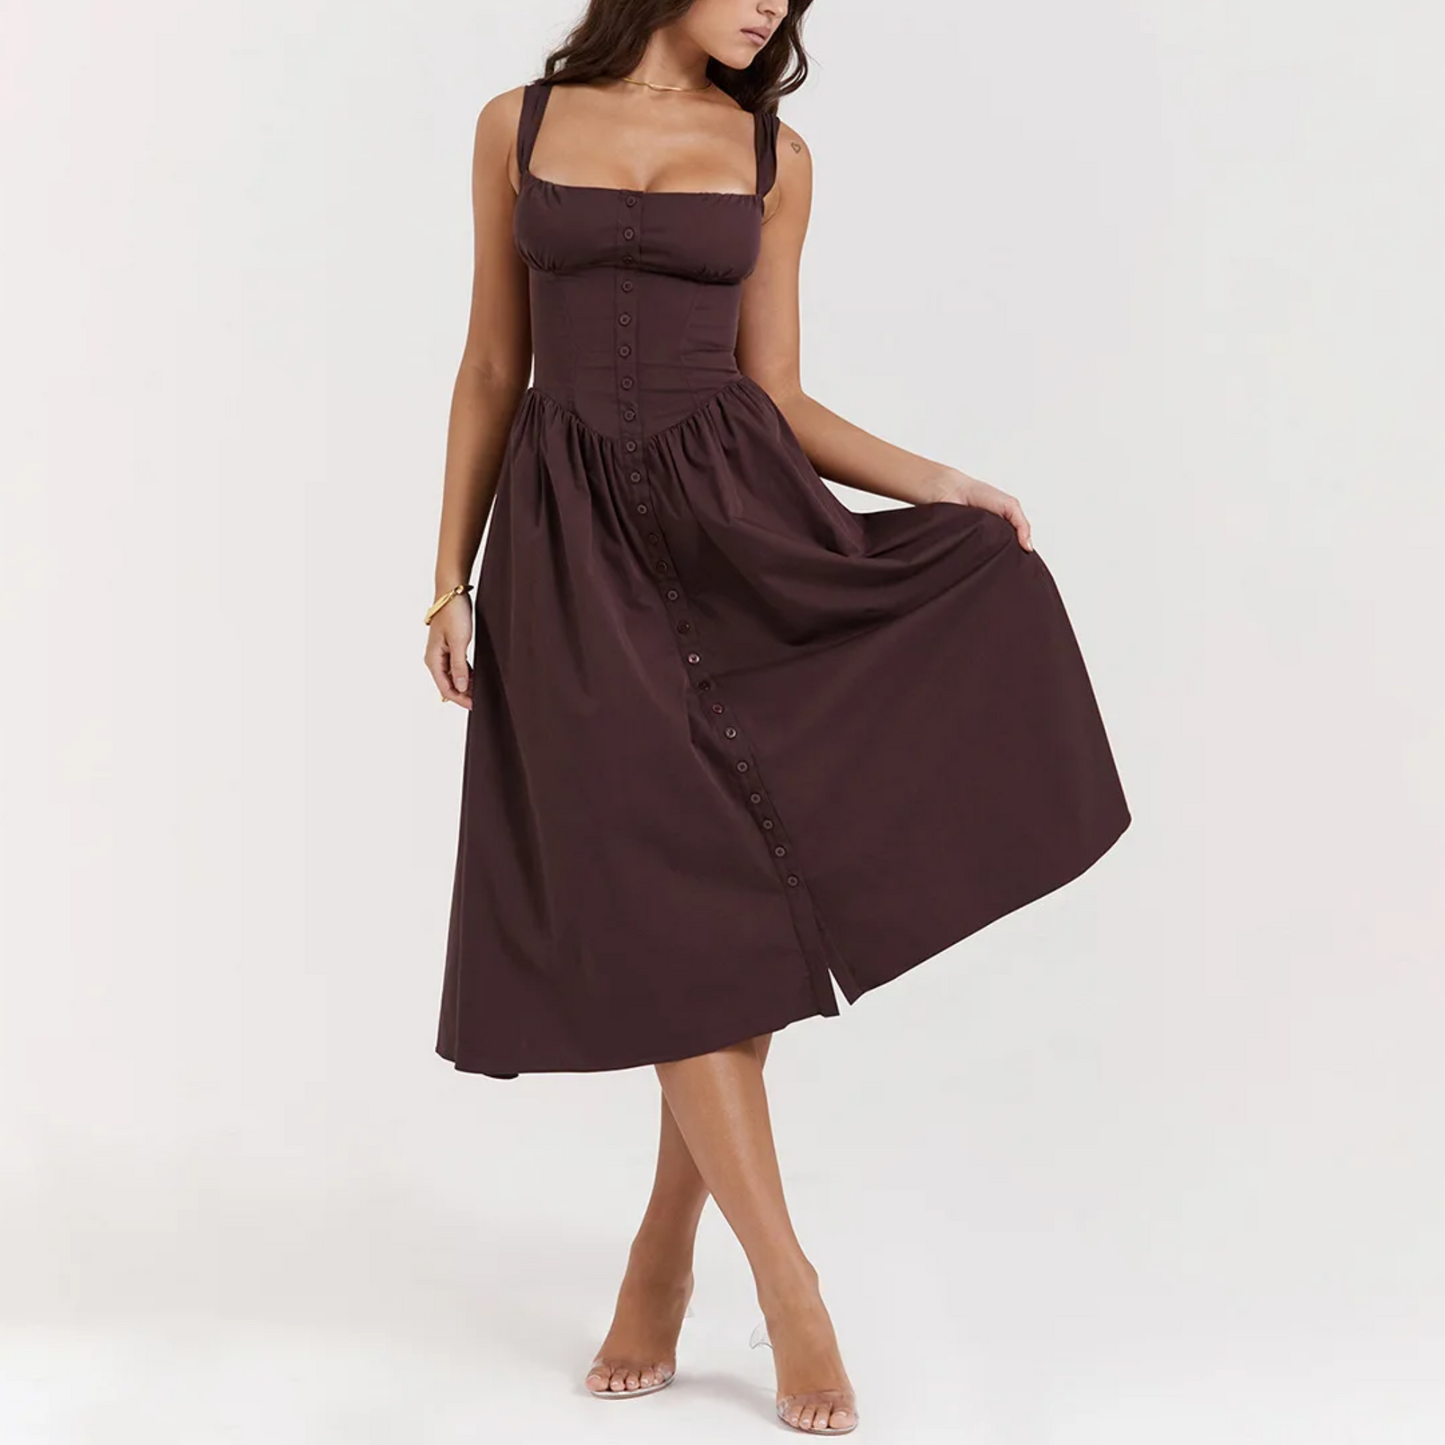 Yara - Brown Midi Fit & Flare Vintage Dress